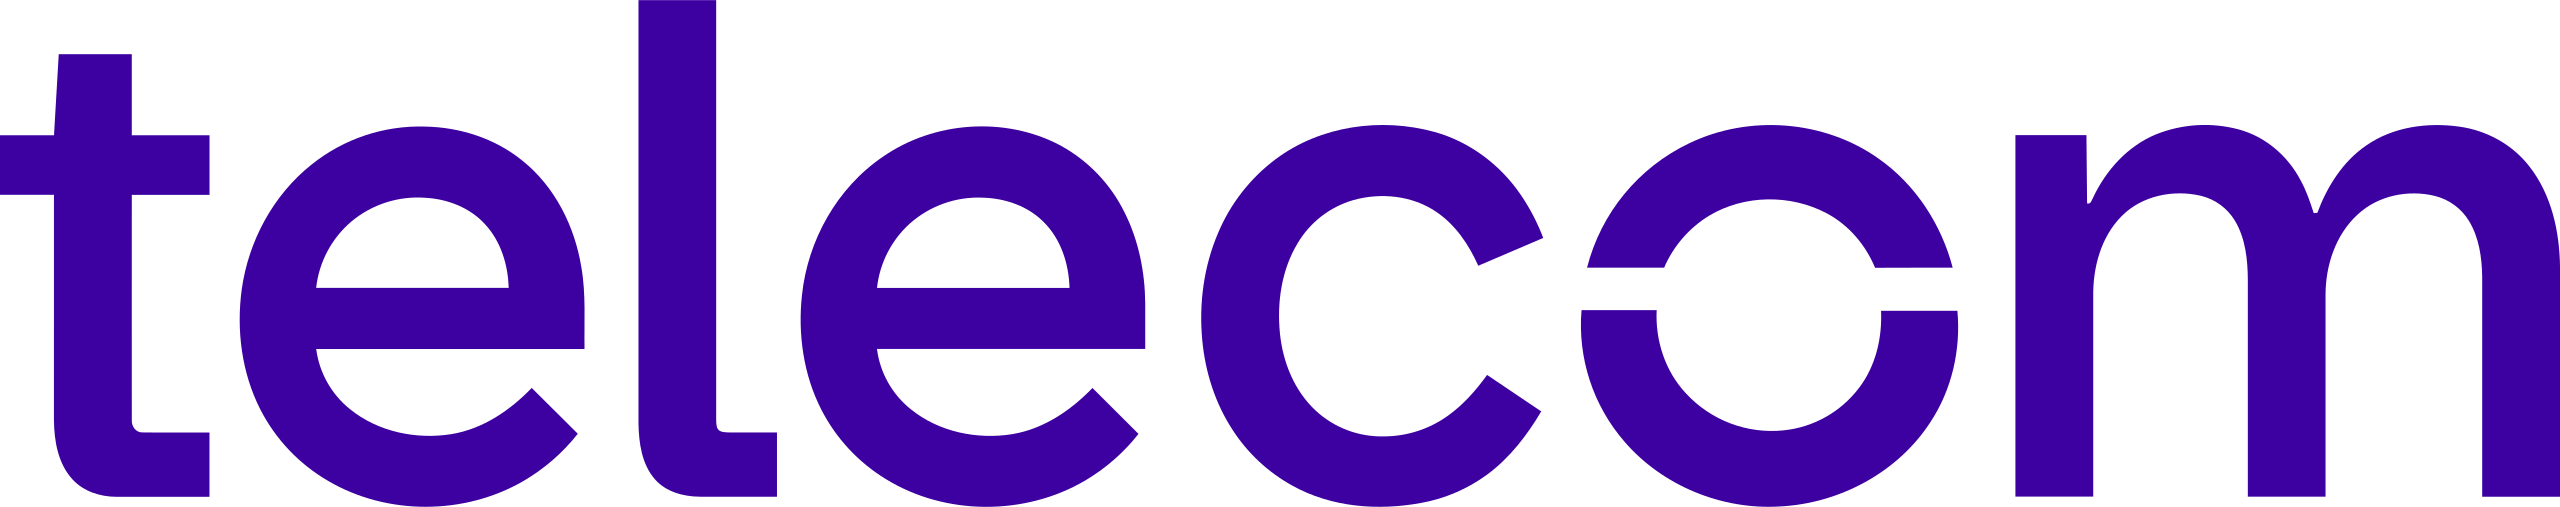 Telecom_logo_2021